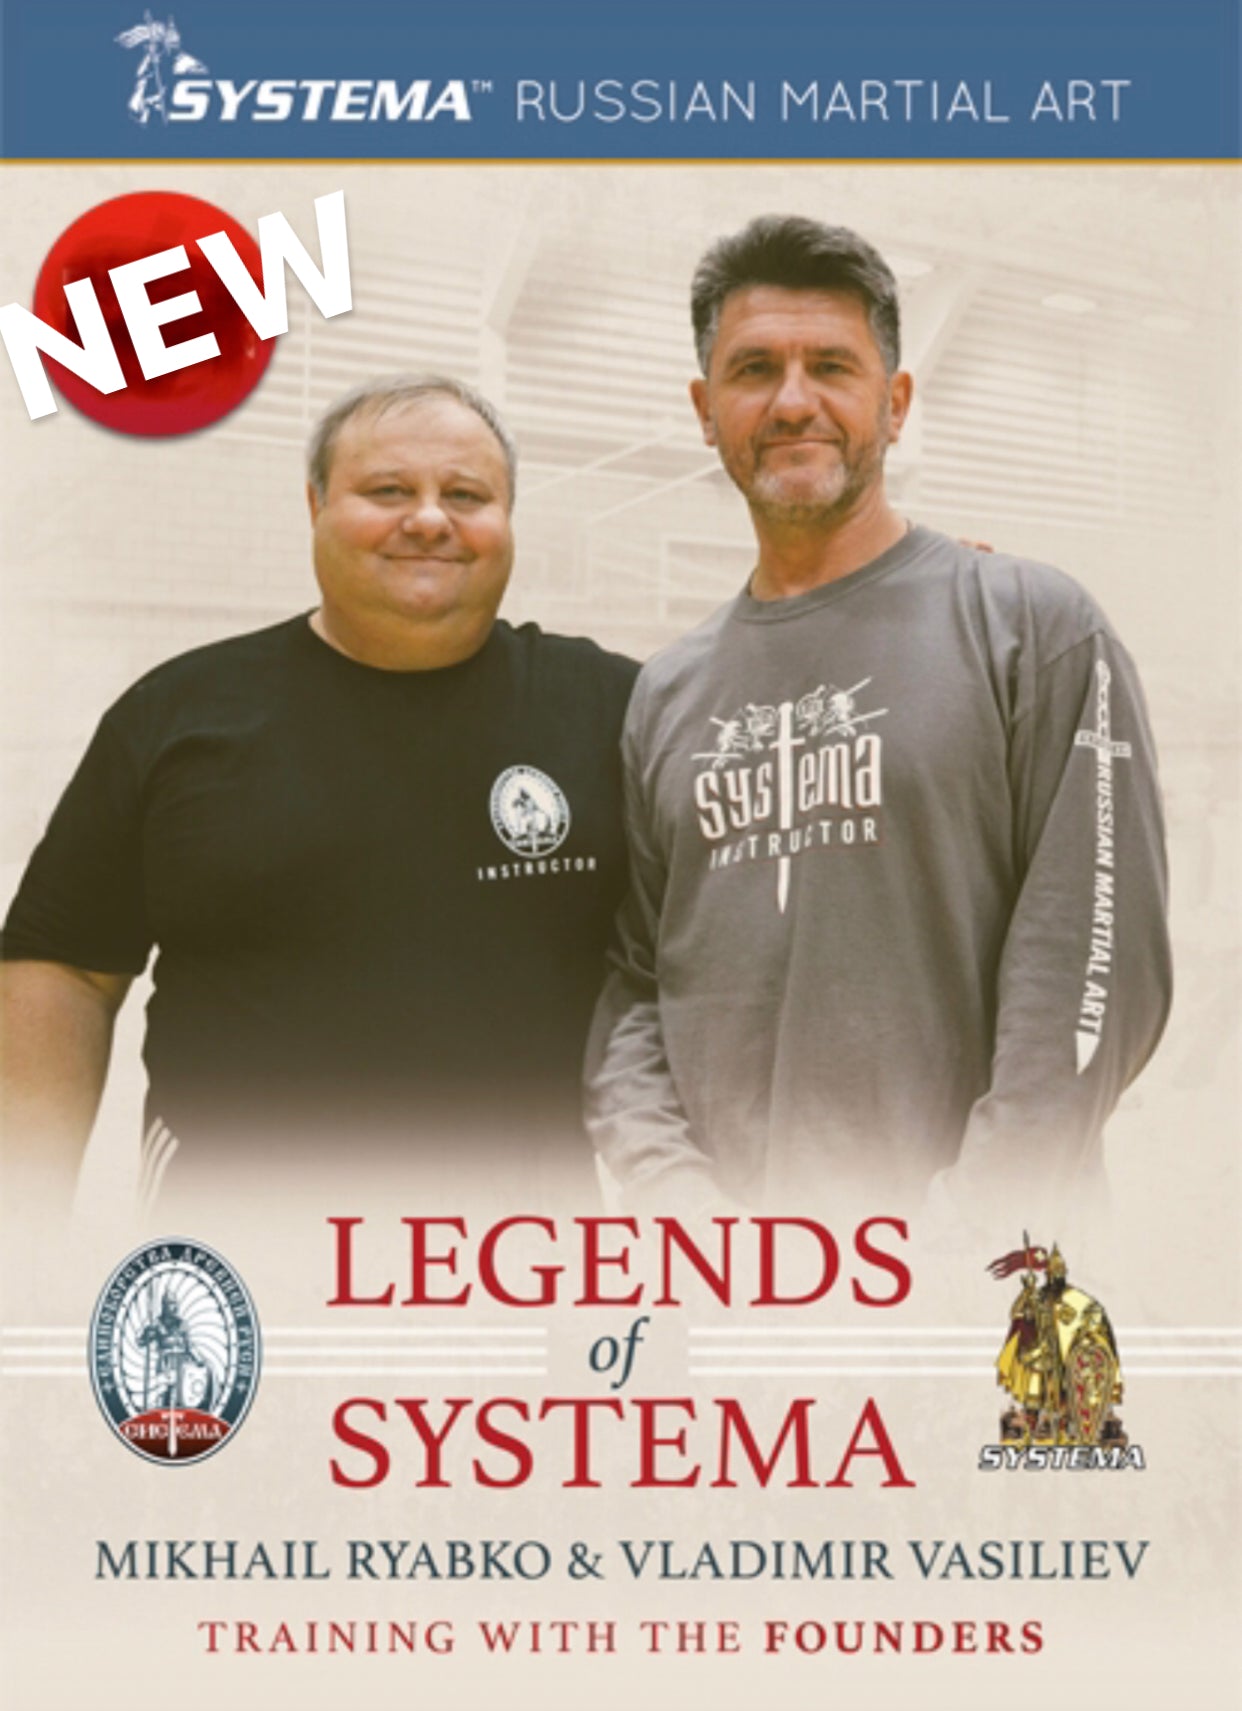 Legends of Systema DVD with Mikhail Ryabko & Vladimir Vasiliev - Budovideos